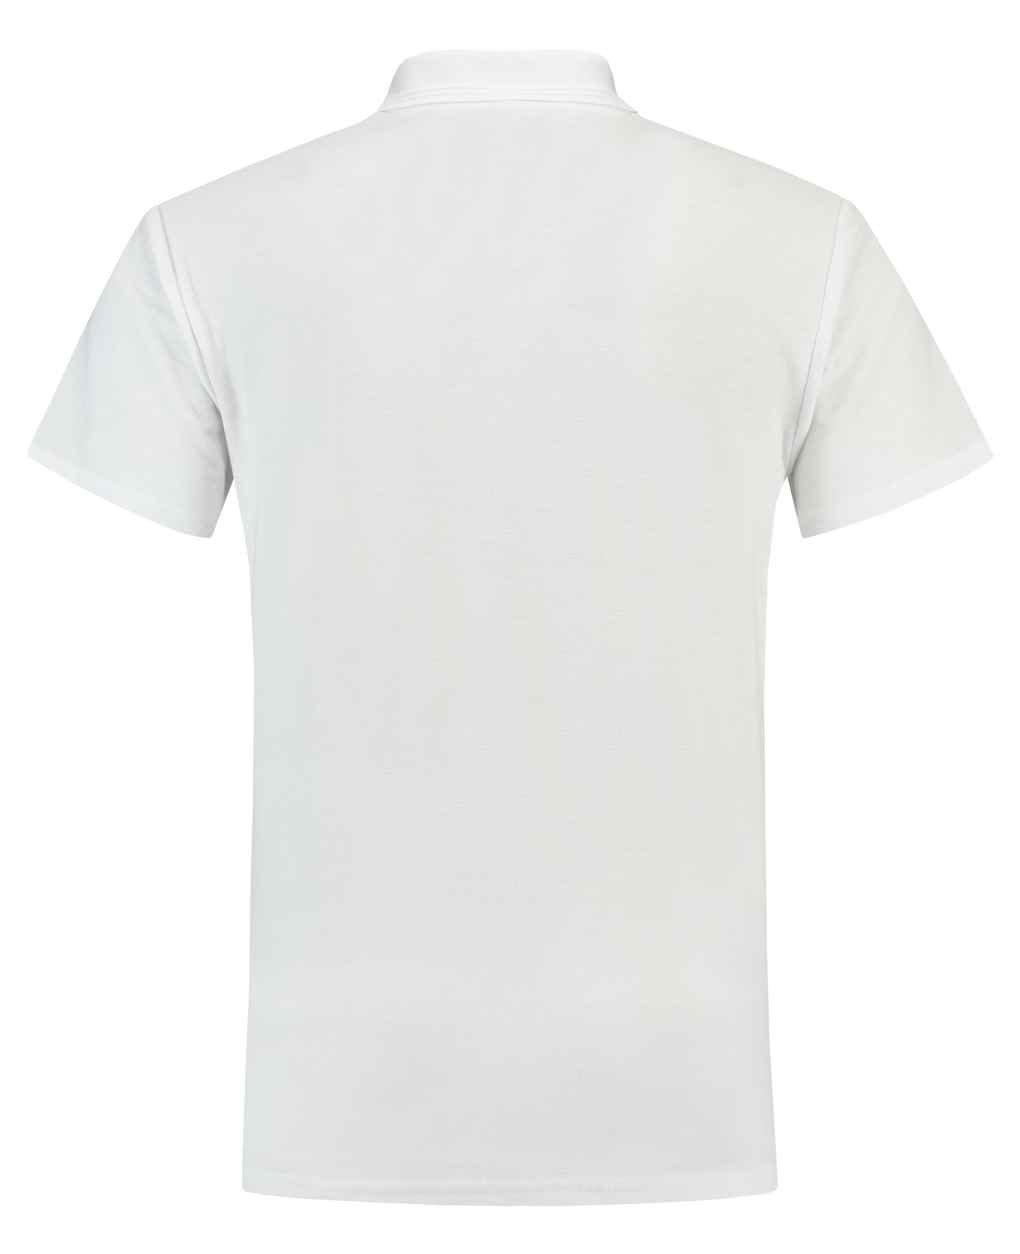 Tricorp Poloshirt 180 Gram White